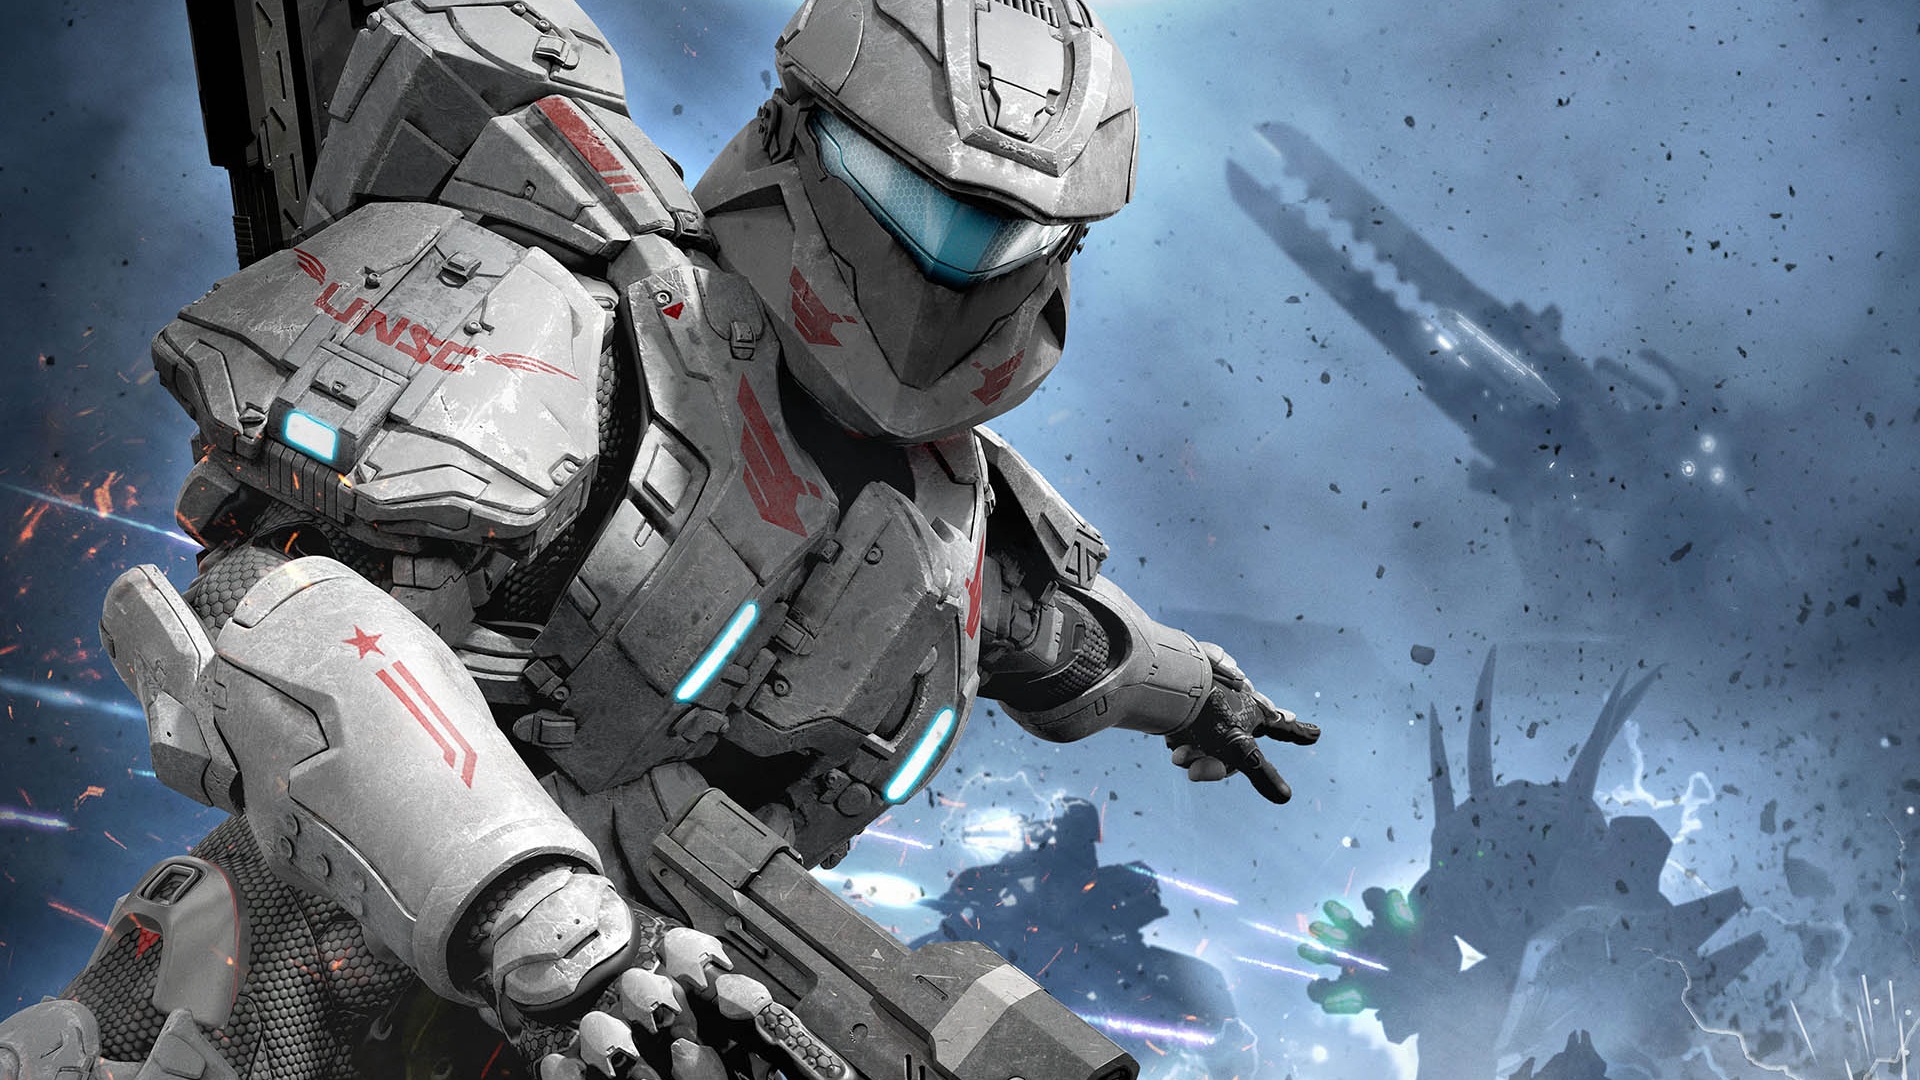 Meilleurs fonds d'écran Halo: Spartan Assault pour l'écran du téléphone